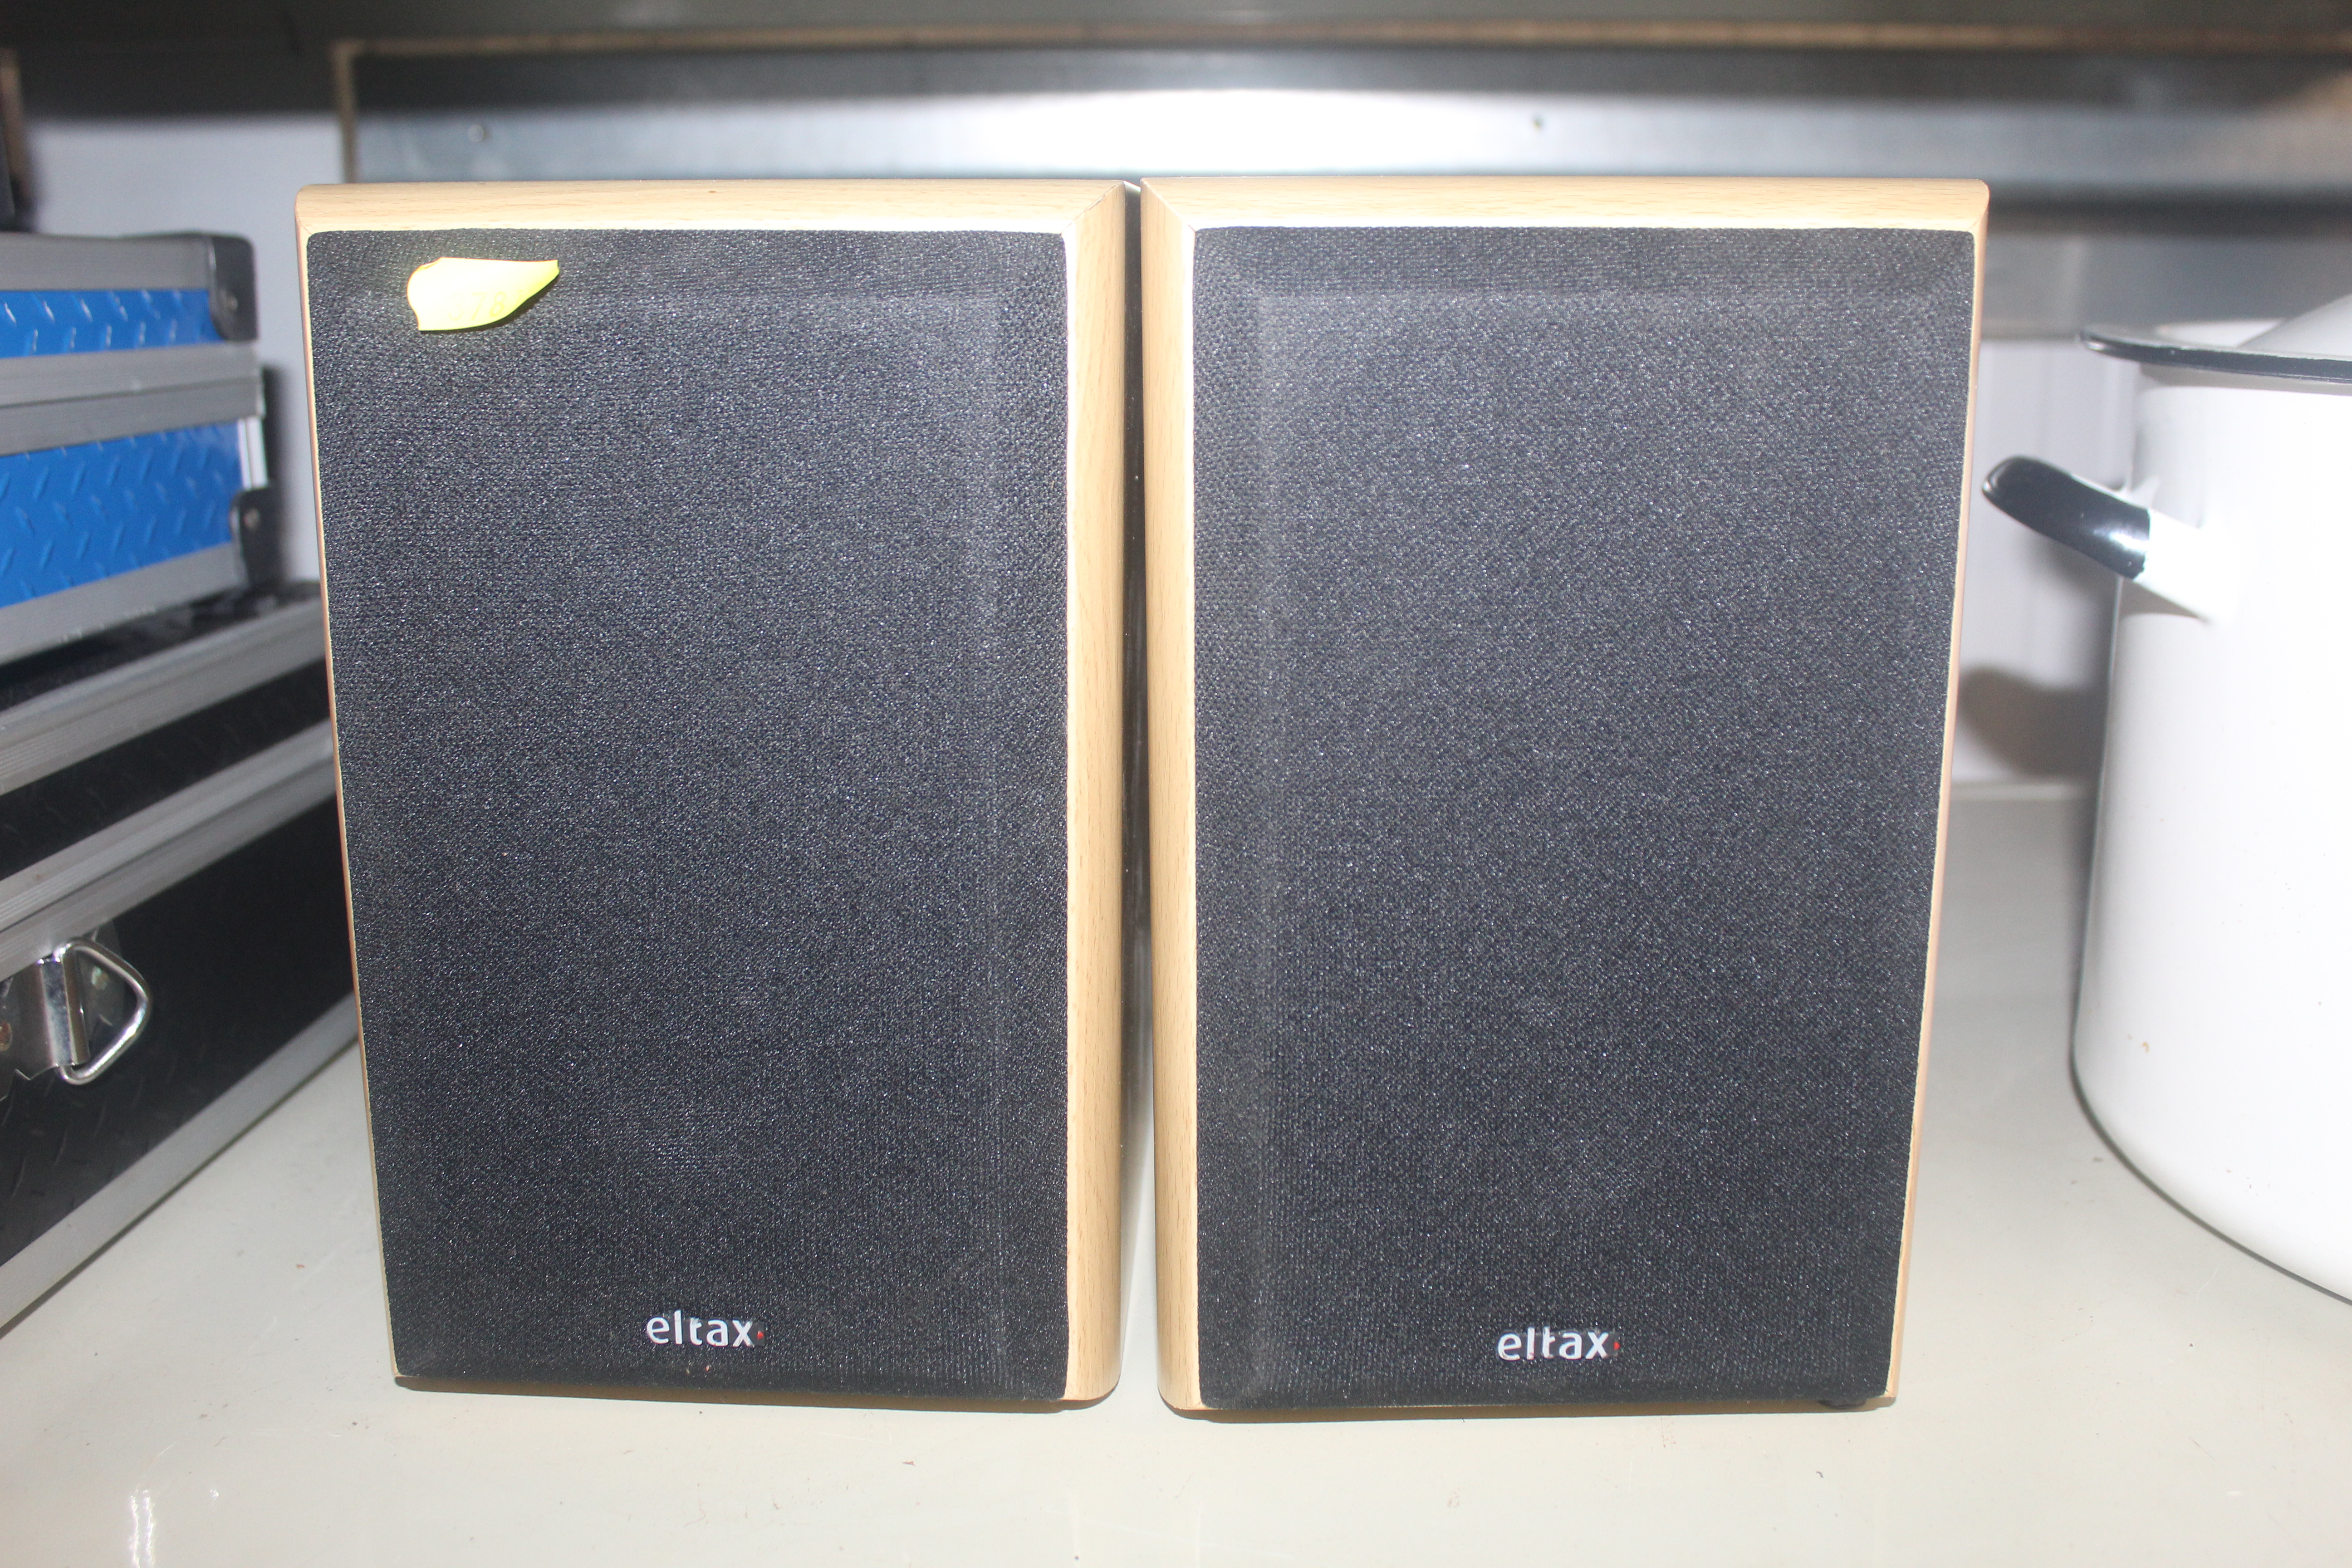 A pair of Eltax concept mini speakers